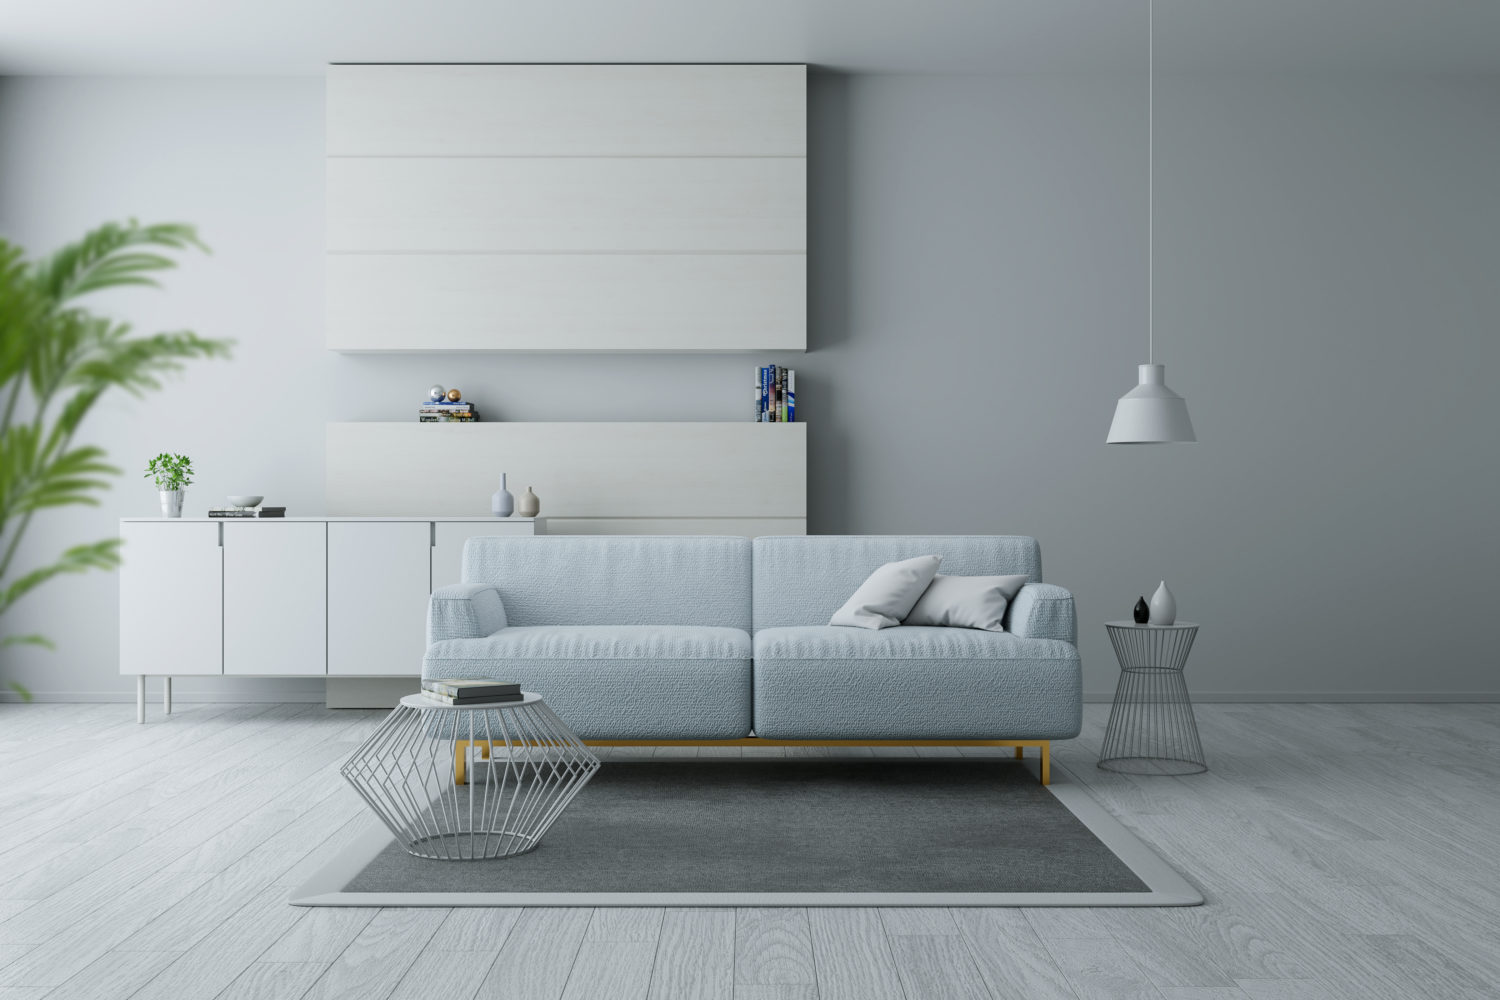 Modernes und minimalistisches Interieur des Wohnzimmers, blaue Sessel auf weißem Fußboden und weißer Wand